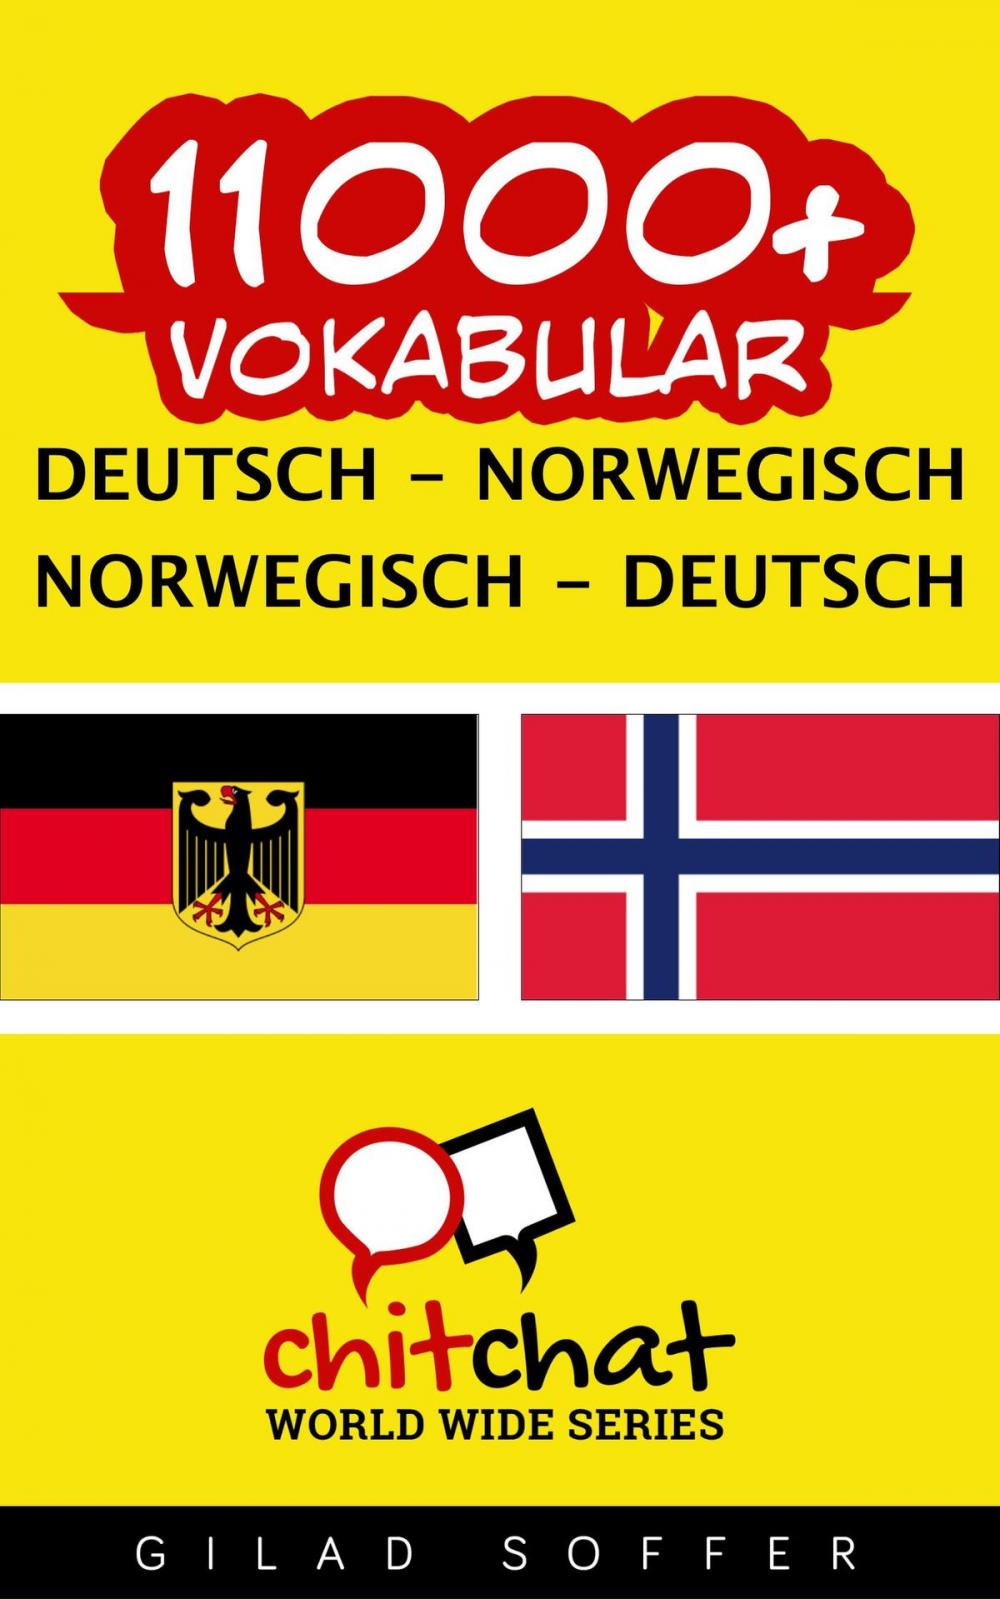 Big bigCover of 11000+ Vokabular Deutsch - Norwegisch